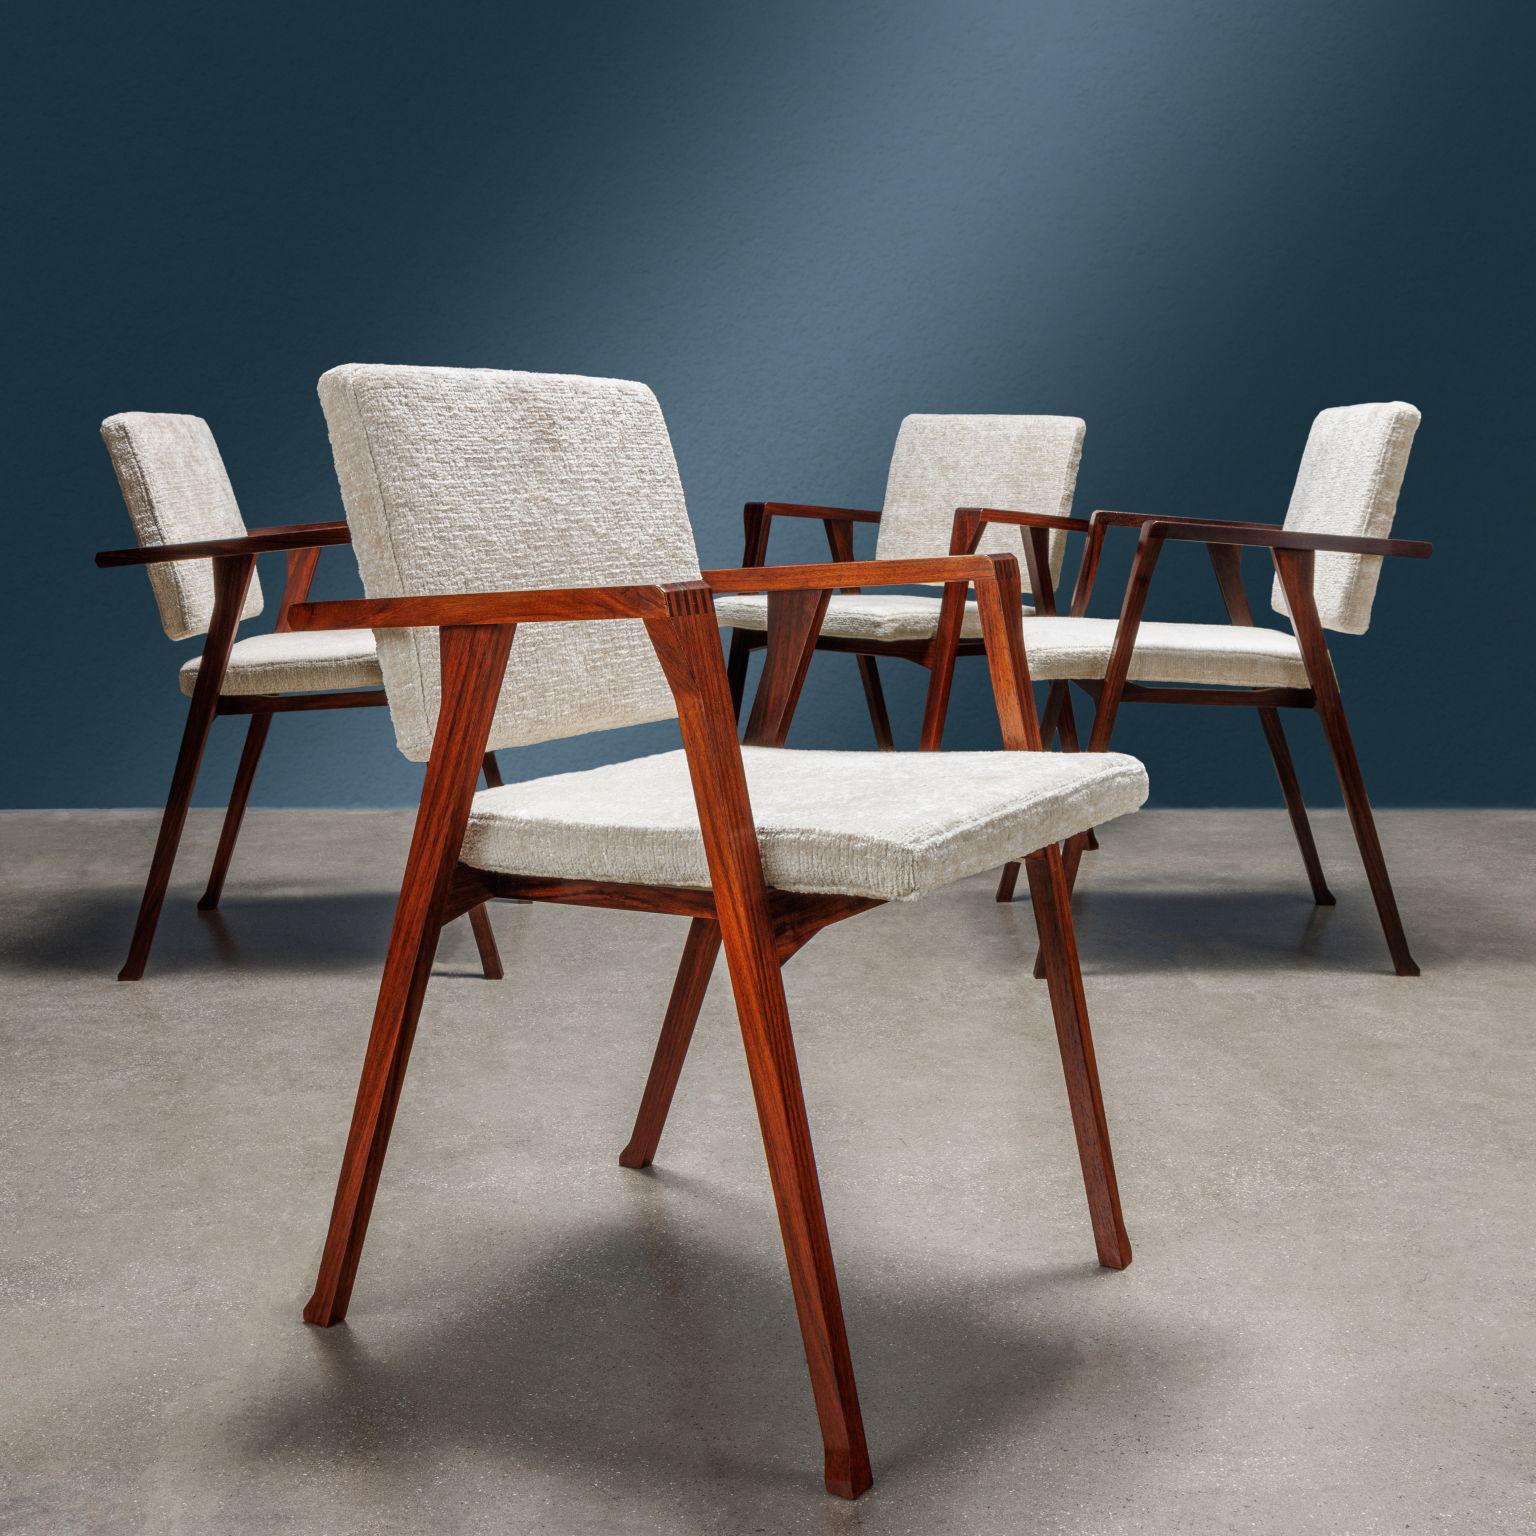 Poltroncine modello 'Luisa' disegnate da Franco Albini e prodotte da Poggi a partire dal 1955. Structure en bois, assise et siège, avec assise en bois et revêtement en tesson.